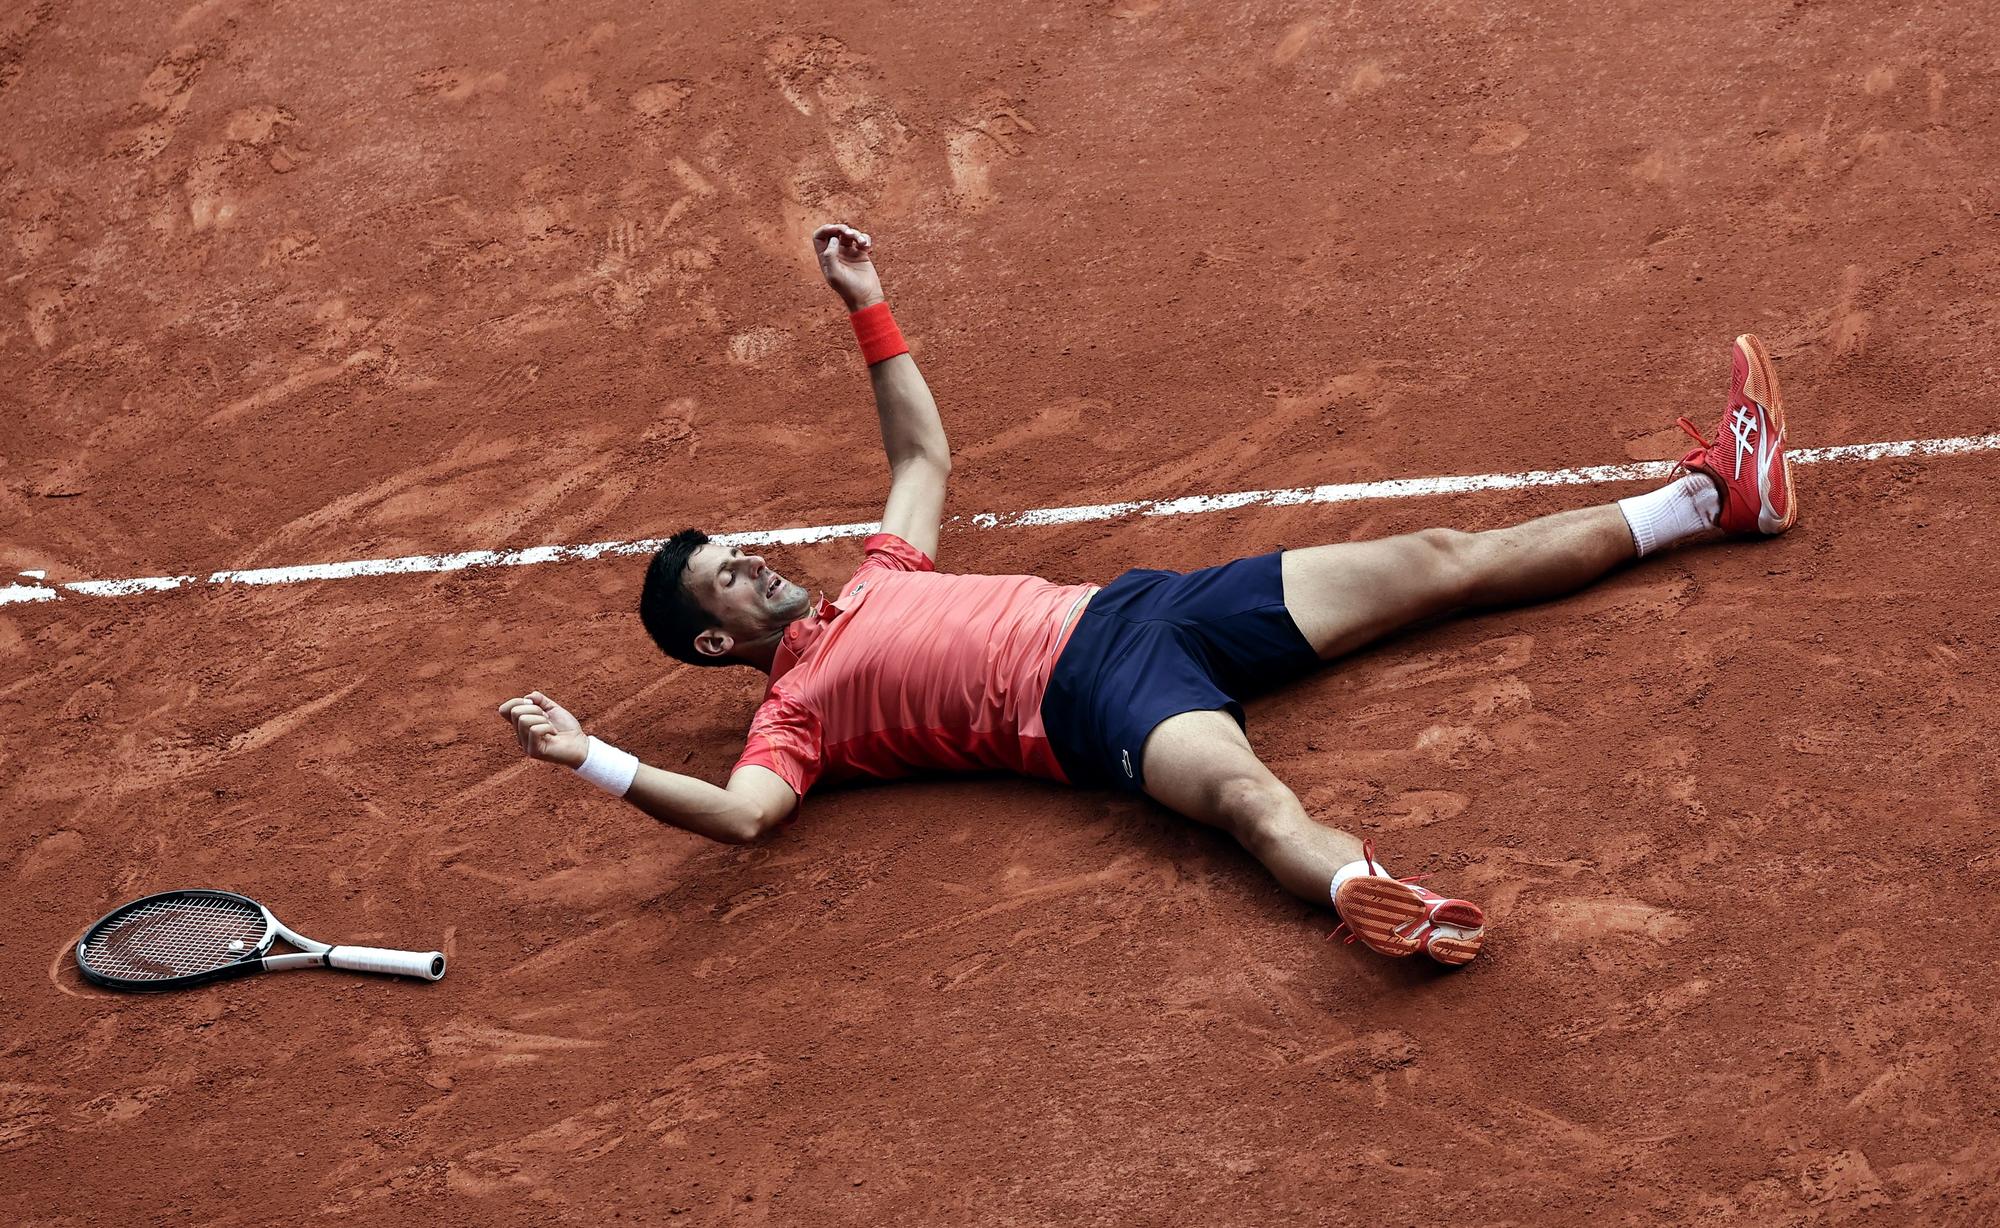 Final de Roland Garros: Novak Djokovic - Casper Ruud